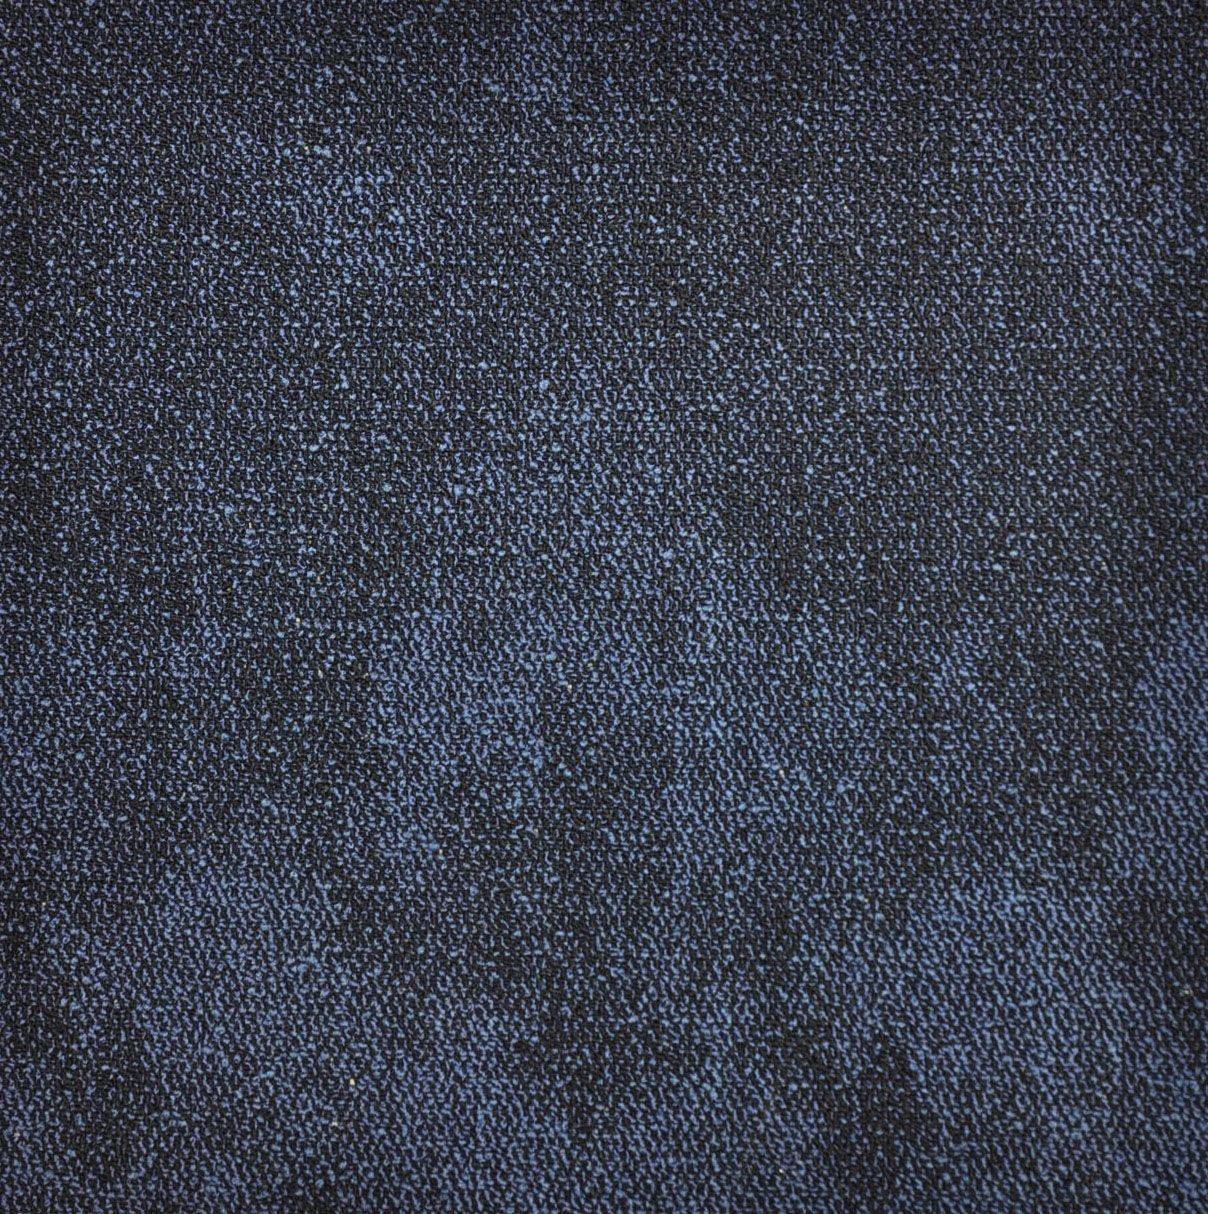 Paragon Vapour Carpet Tile Mist